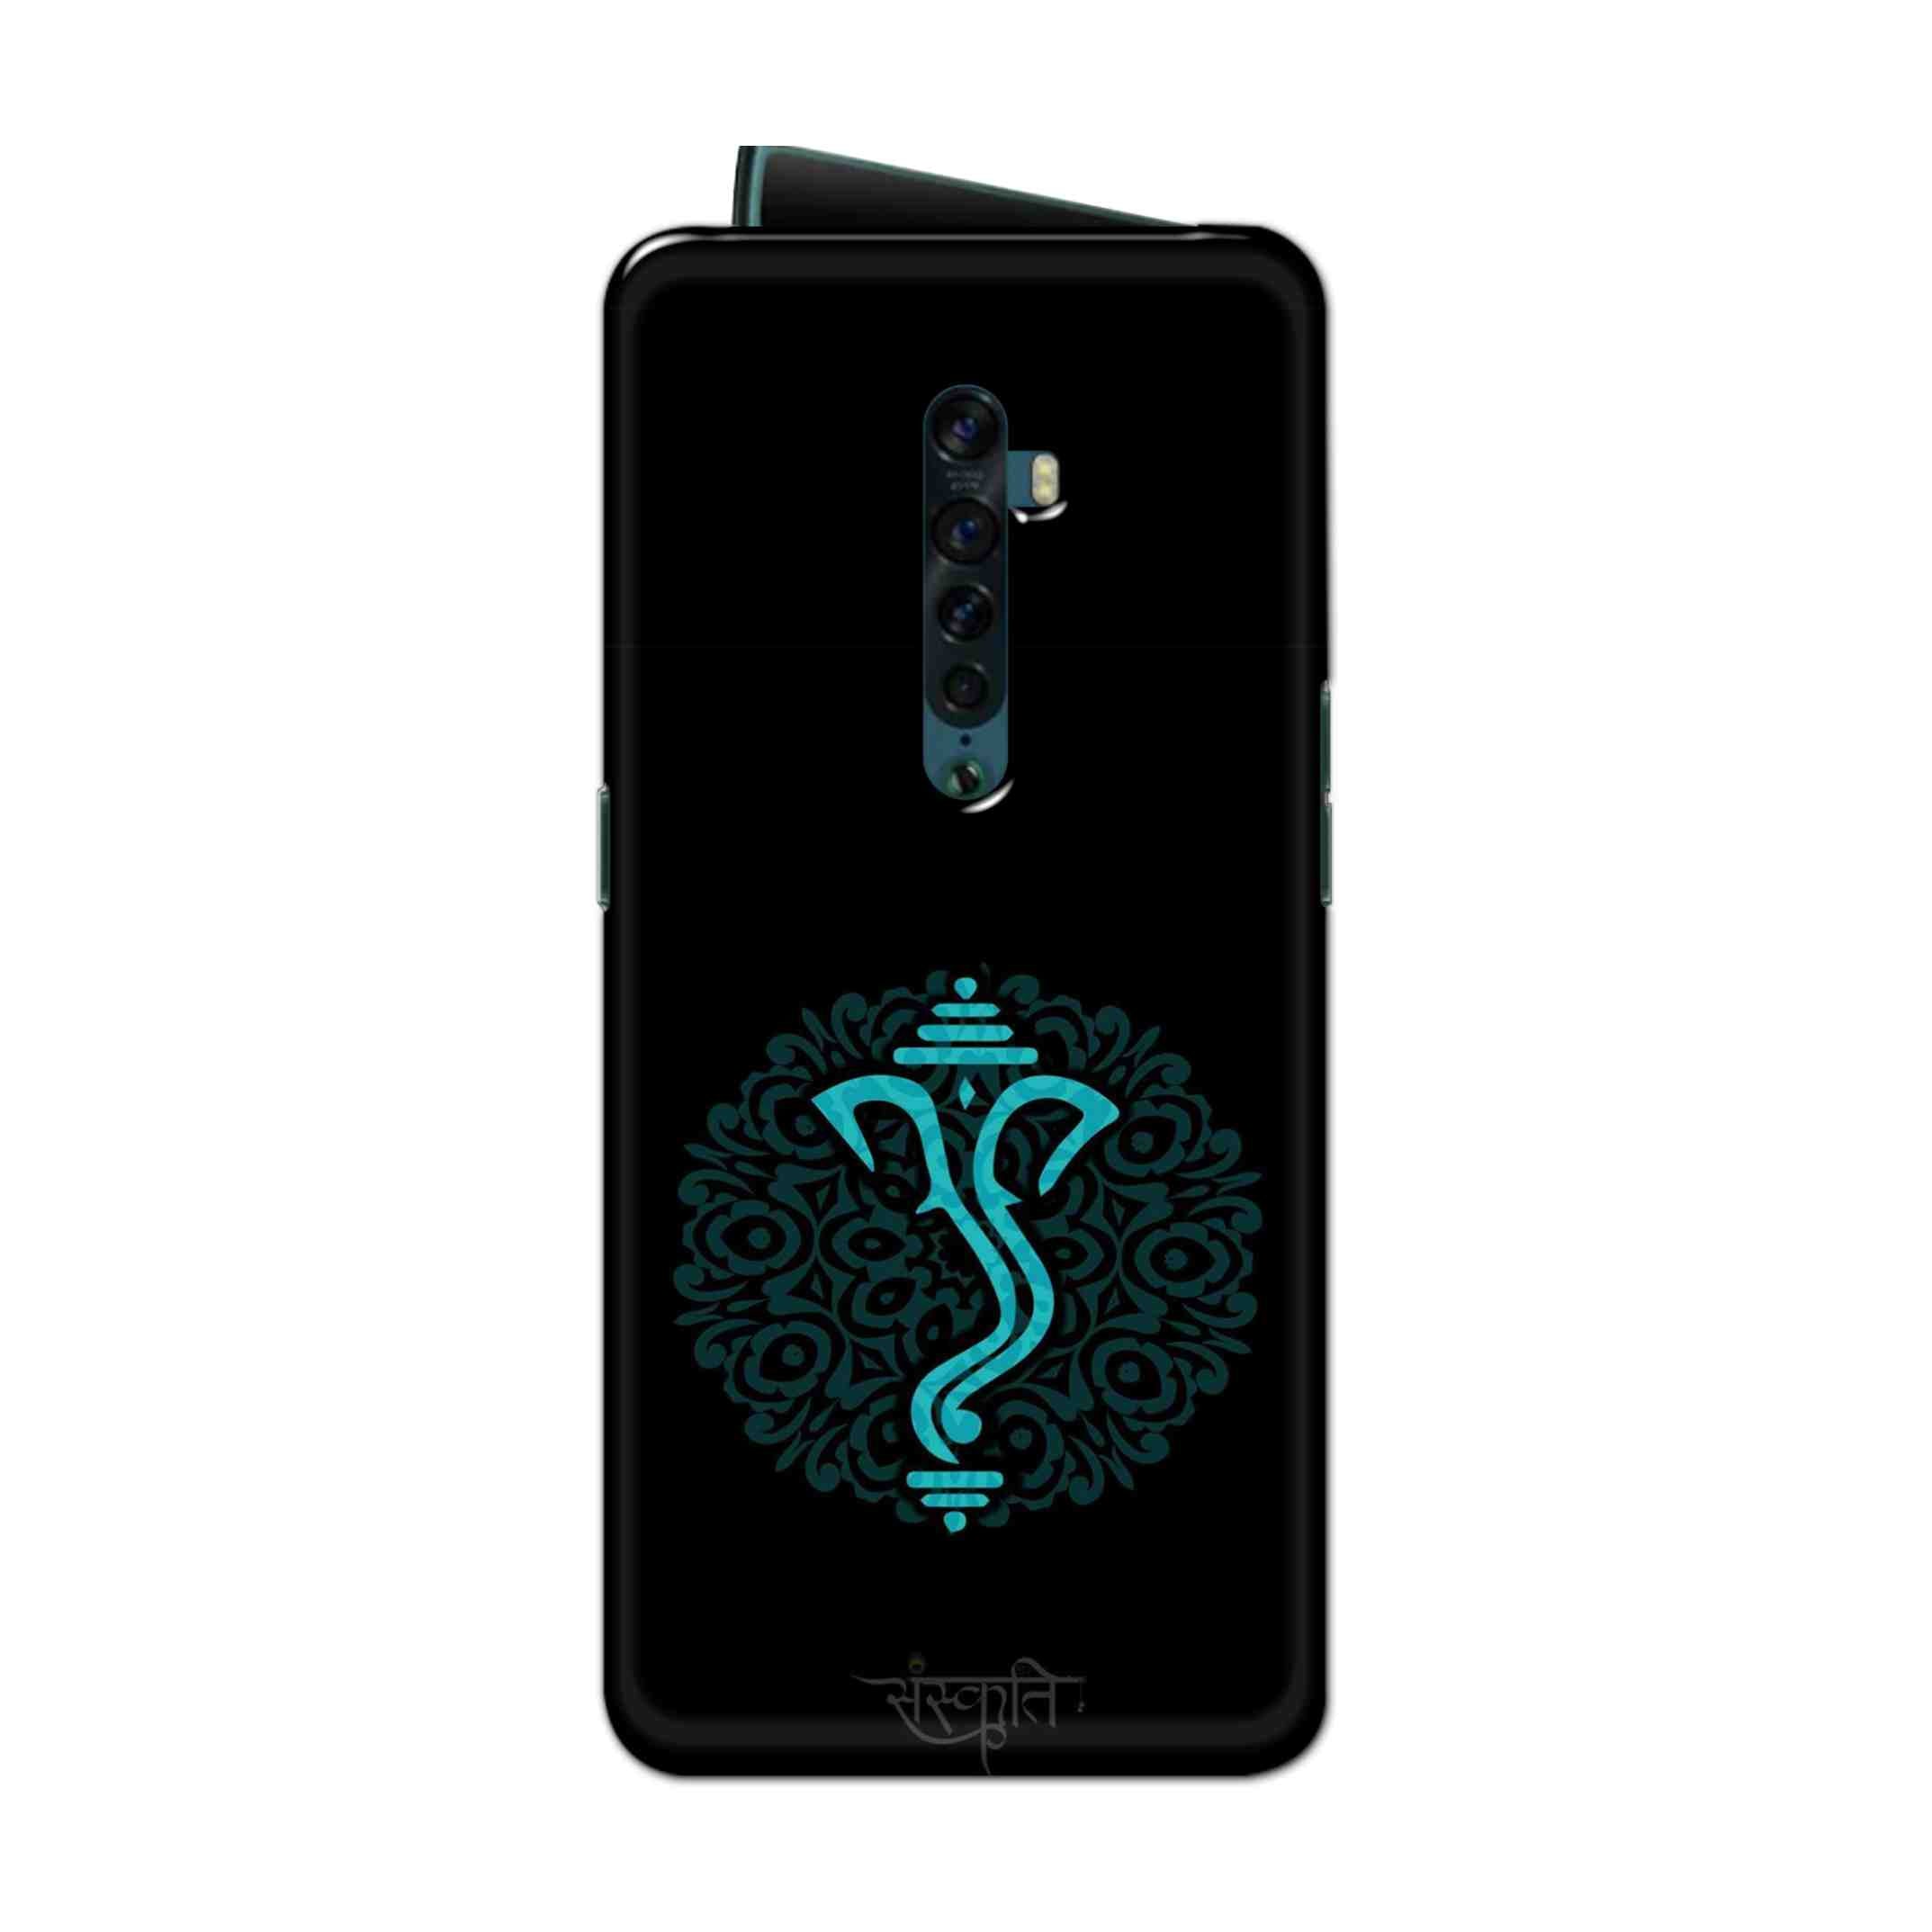 Buy Ganpati Bappa Hard Back Mobile Phone Case Cover For Oppo Reno 2 Online